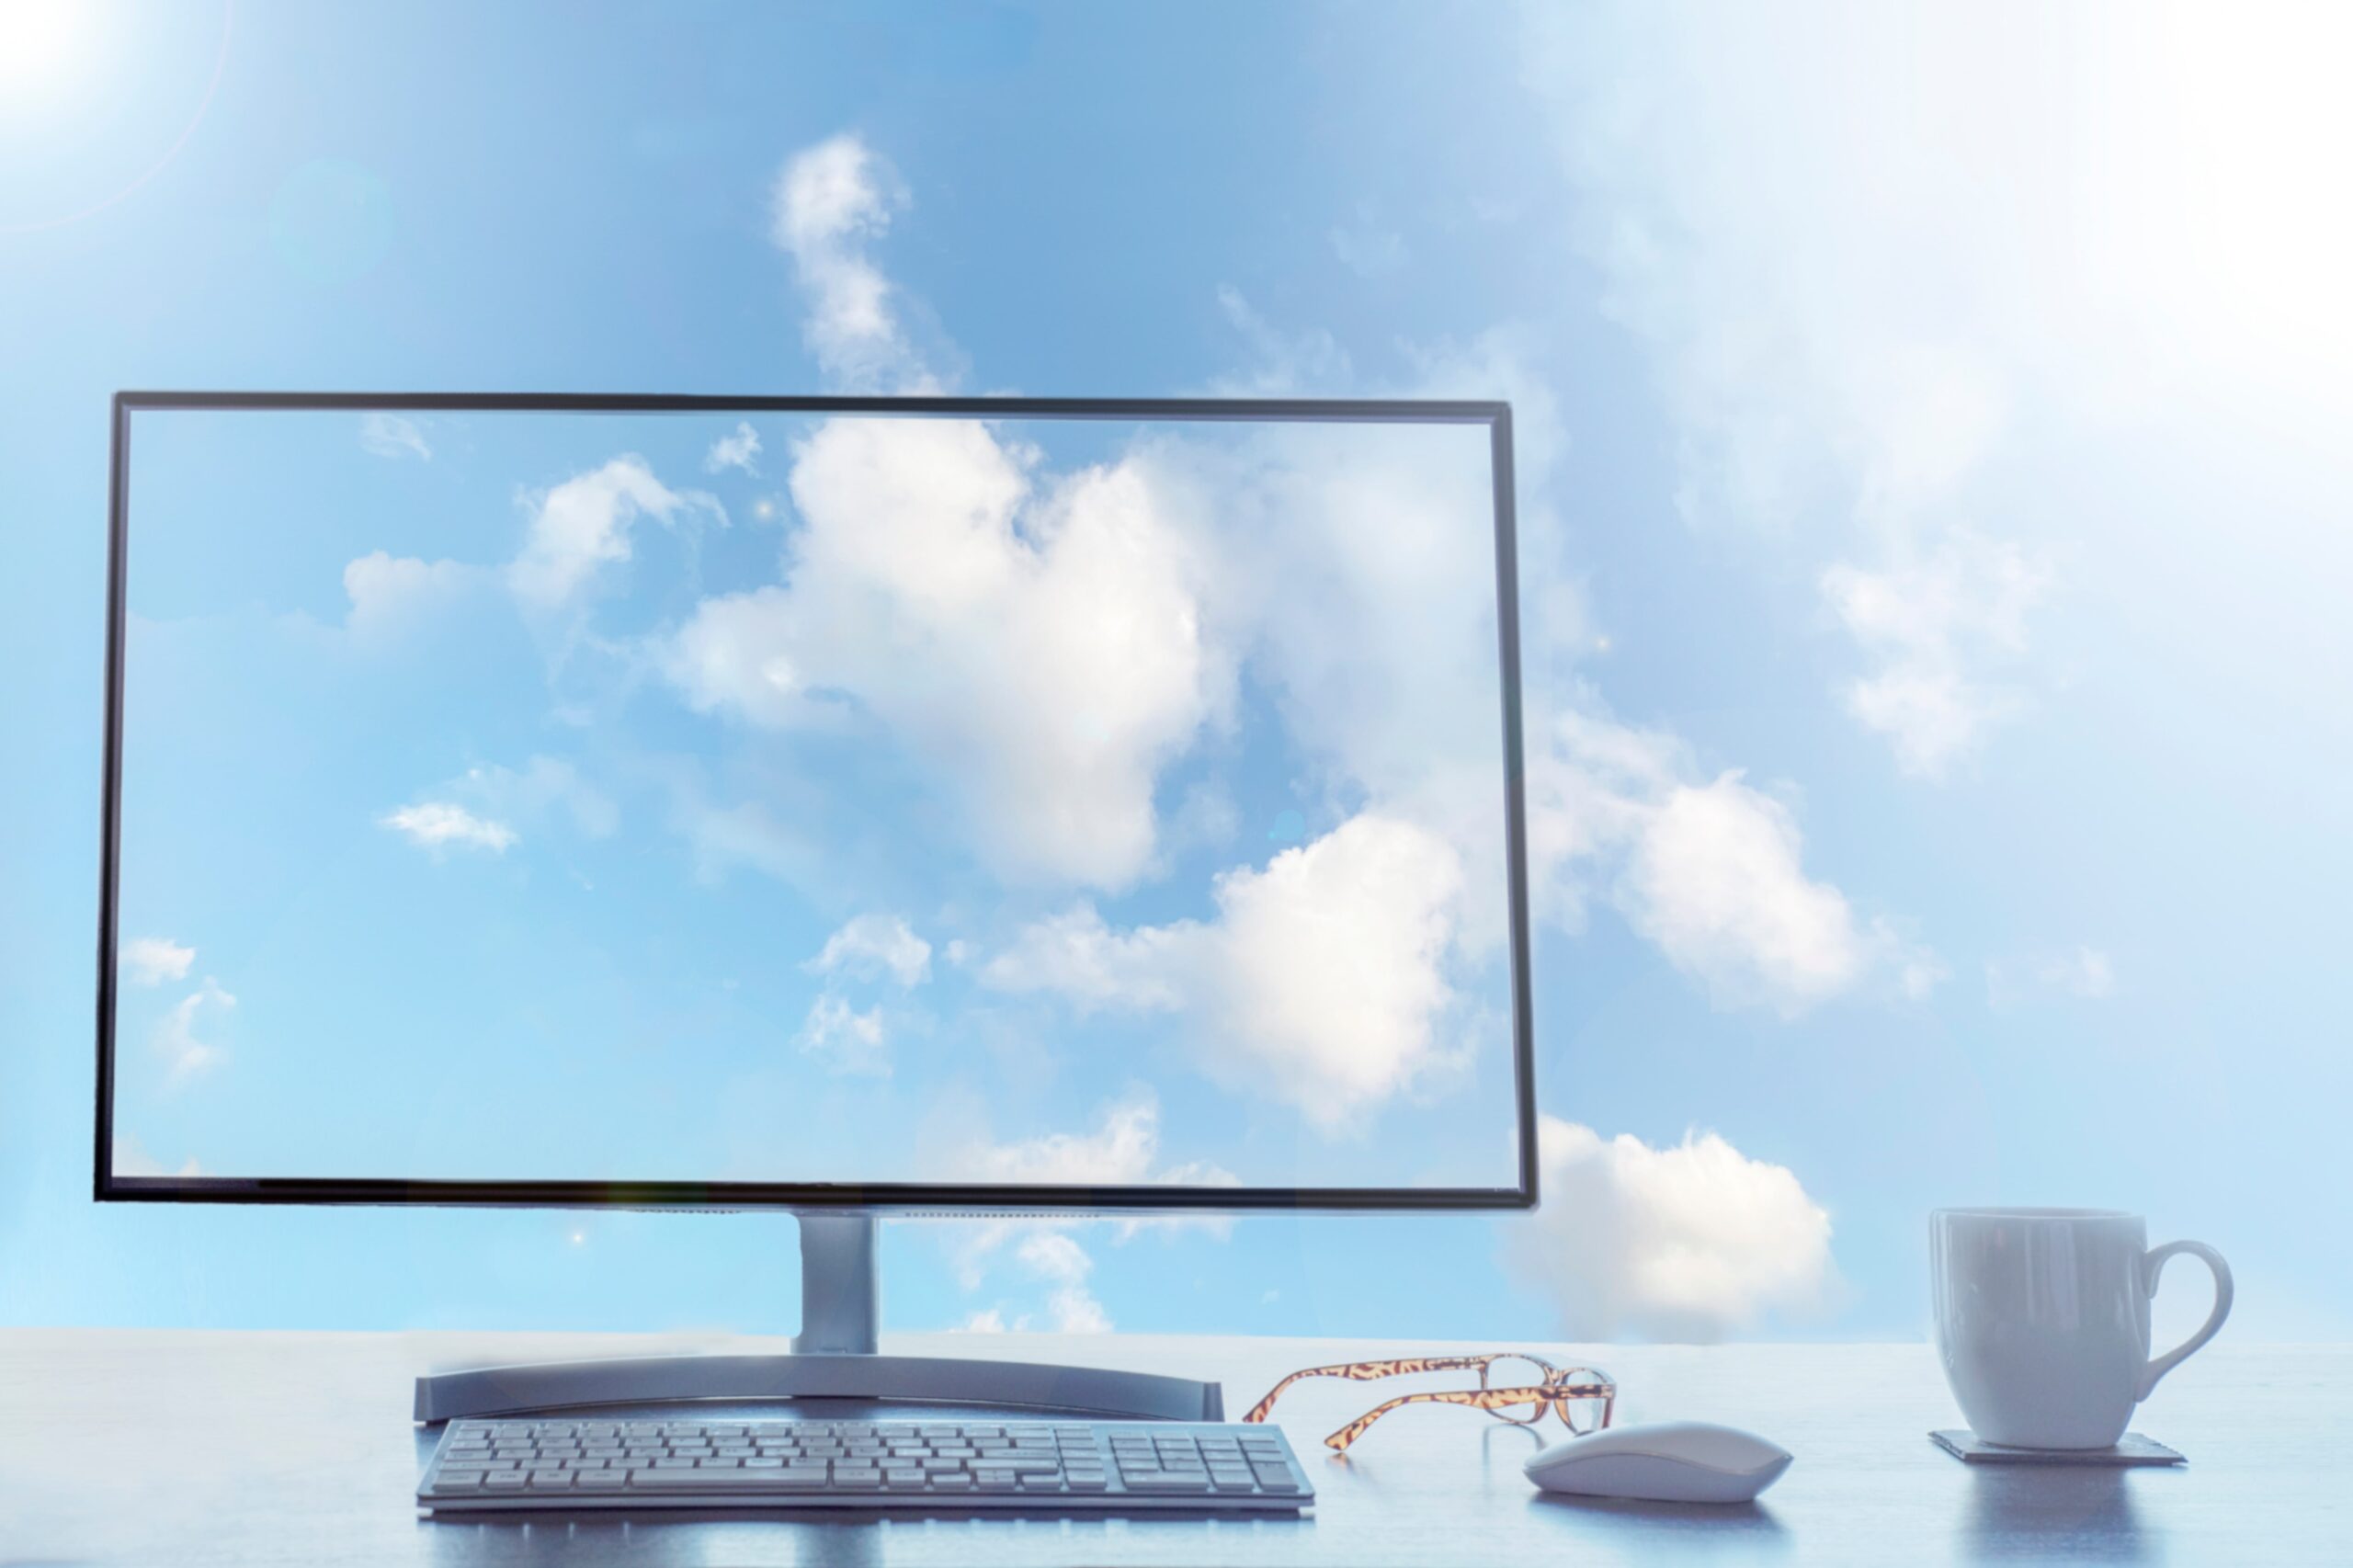 Capa do artigo “Migração para a nuvem: como implementar um plano de sucesso?” onde vemos um monitor de computador transparente em cima de uma mesa com teclado, mouse e um par de óculos. No fundo da imagem vemos um céu com nuvens, exibido também no monitor.